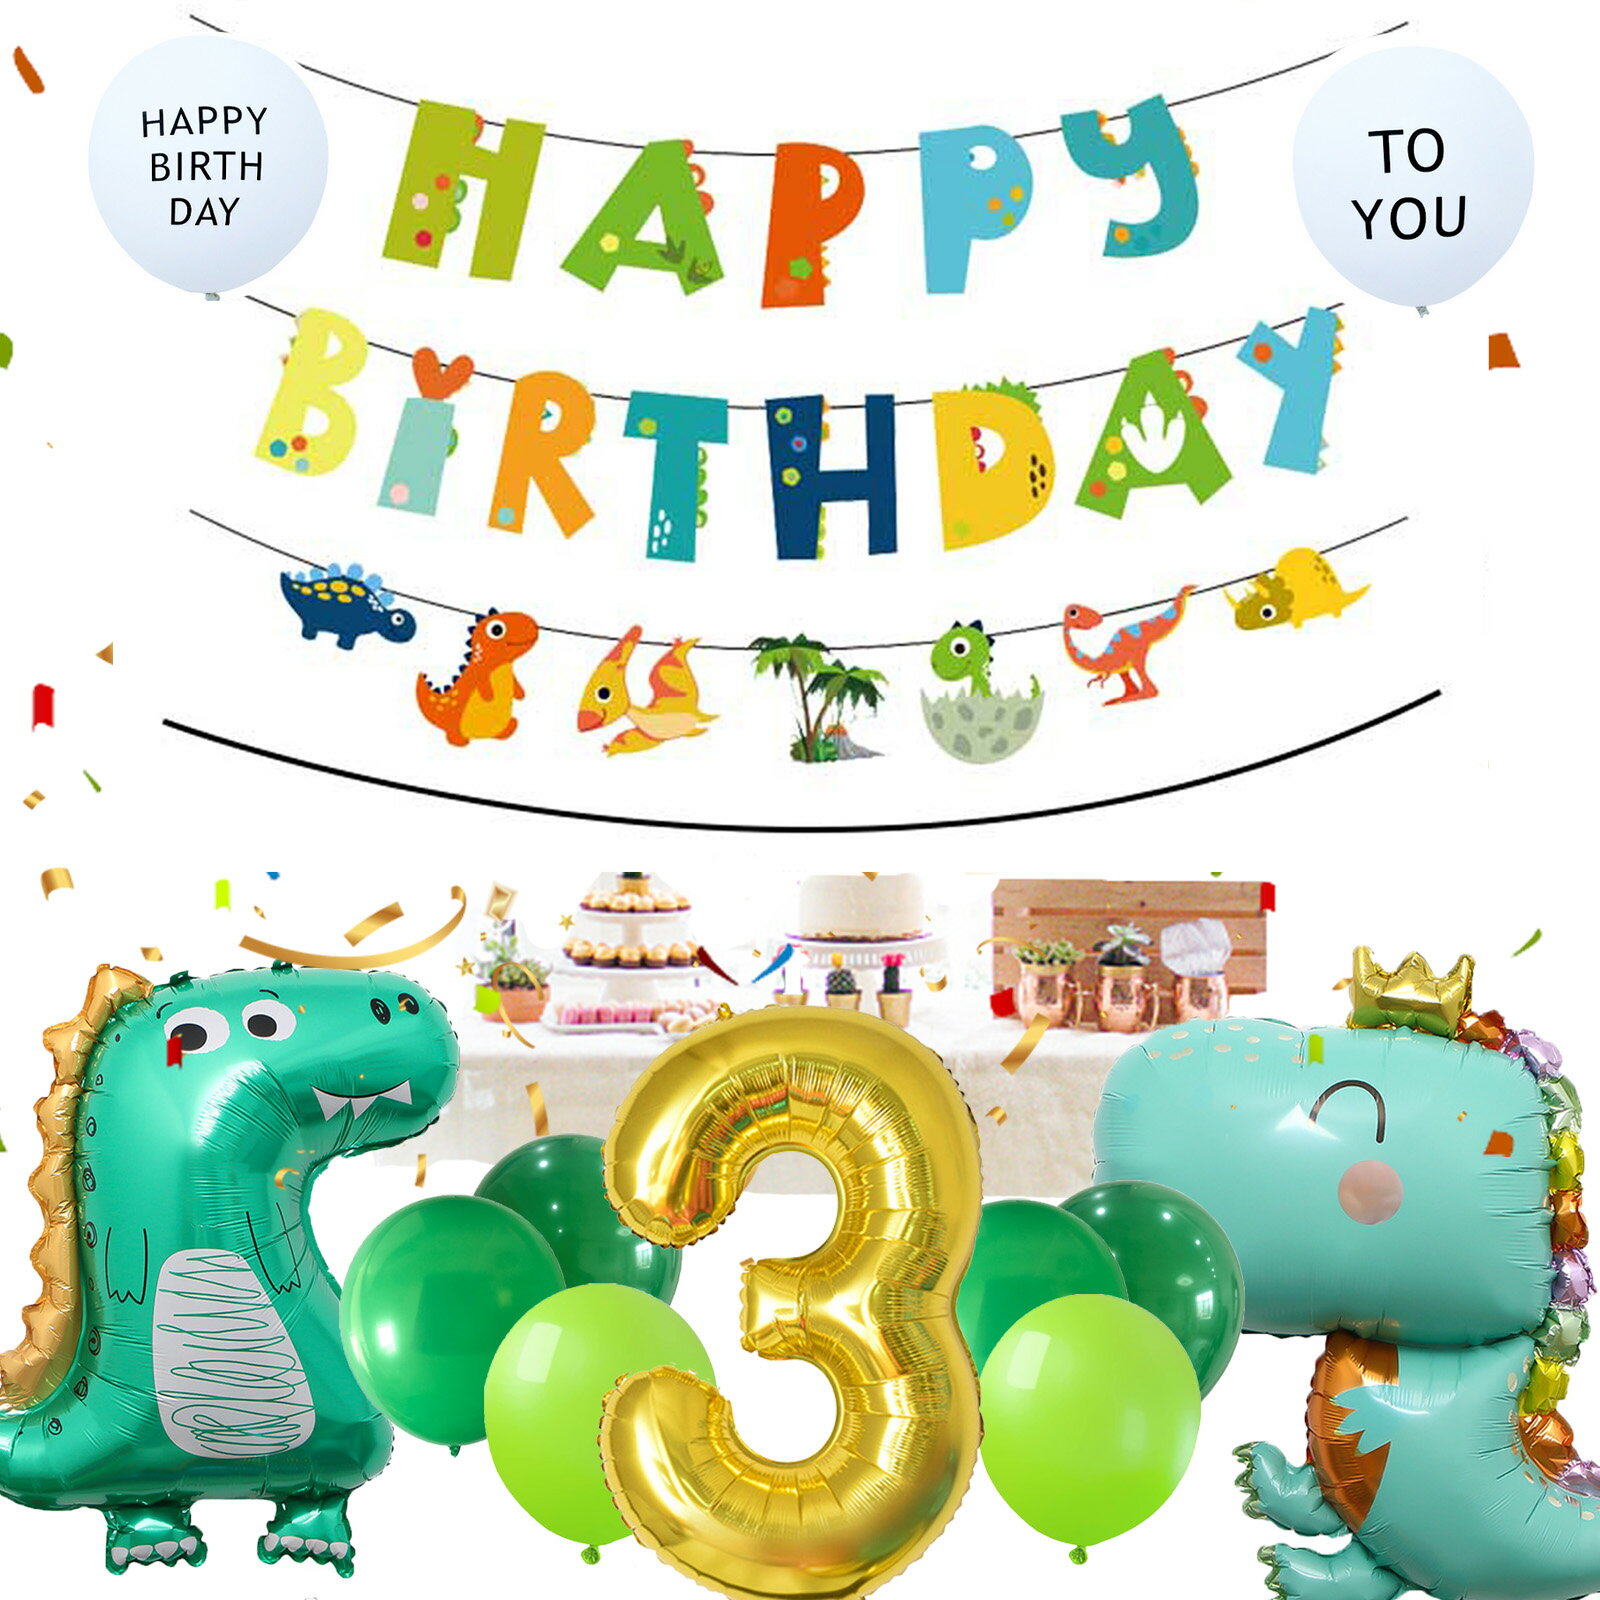 男の子 誕生日 飾り付け バルーン ダイナソー 恐竜 キャラクター 数字バルーン 2歳 風船 3歳 4歳 5歳 6歳 Happy Birthday バースデー デコレーション セット 写真映え バースデー パーティー 子供 お誕生日 飾りセット